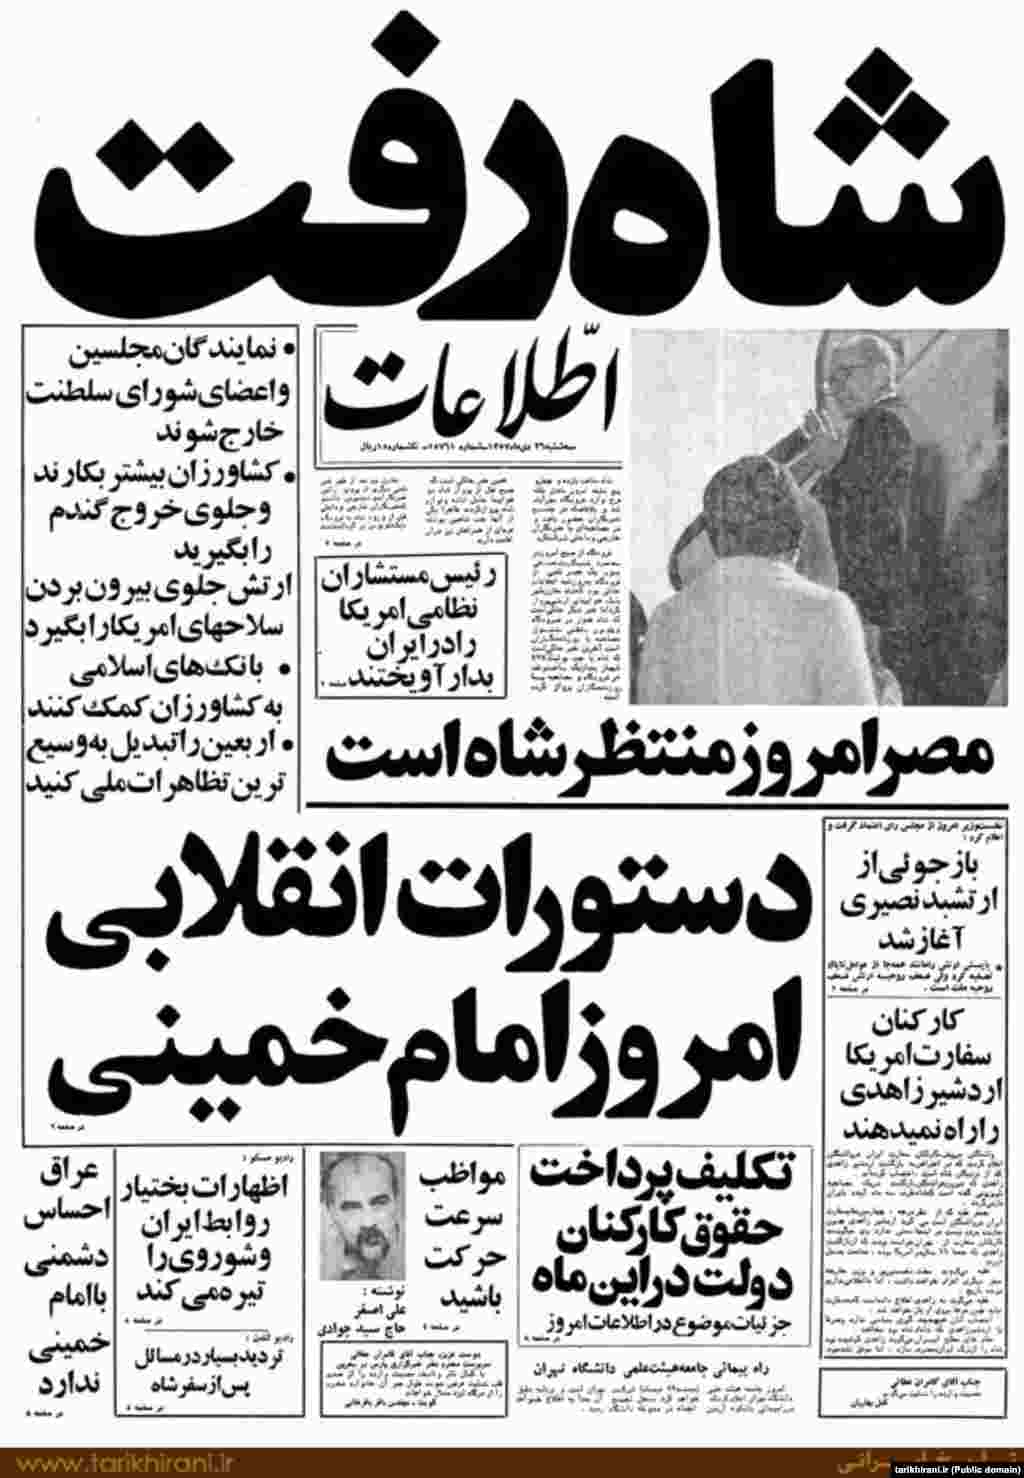 بازتاب خروج شاه از ایران در صفحه نخست روزنامه اطلاعات در دی ماه ۵۷